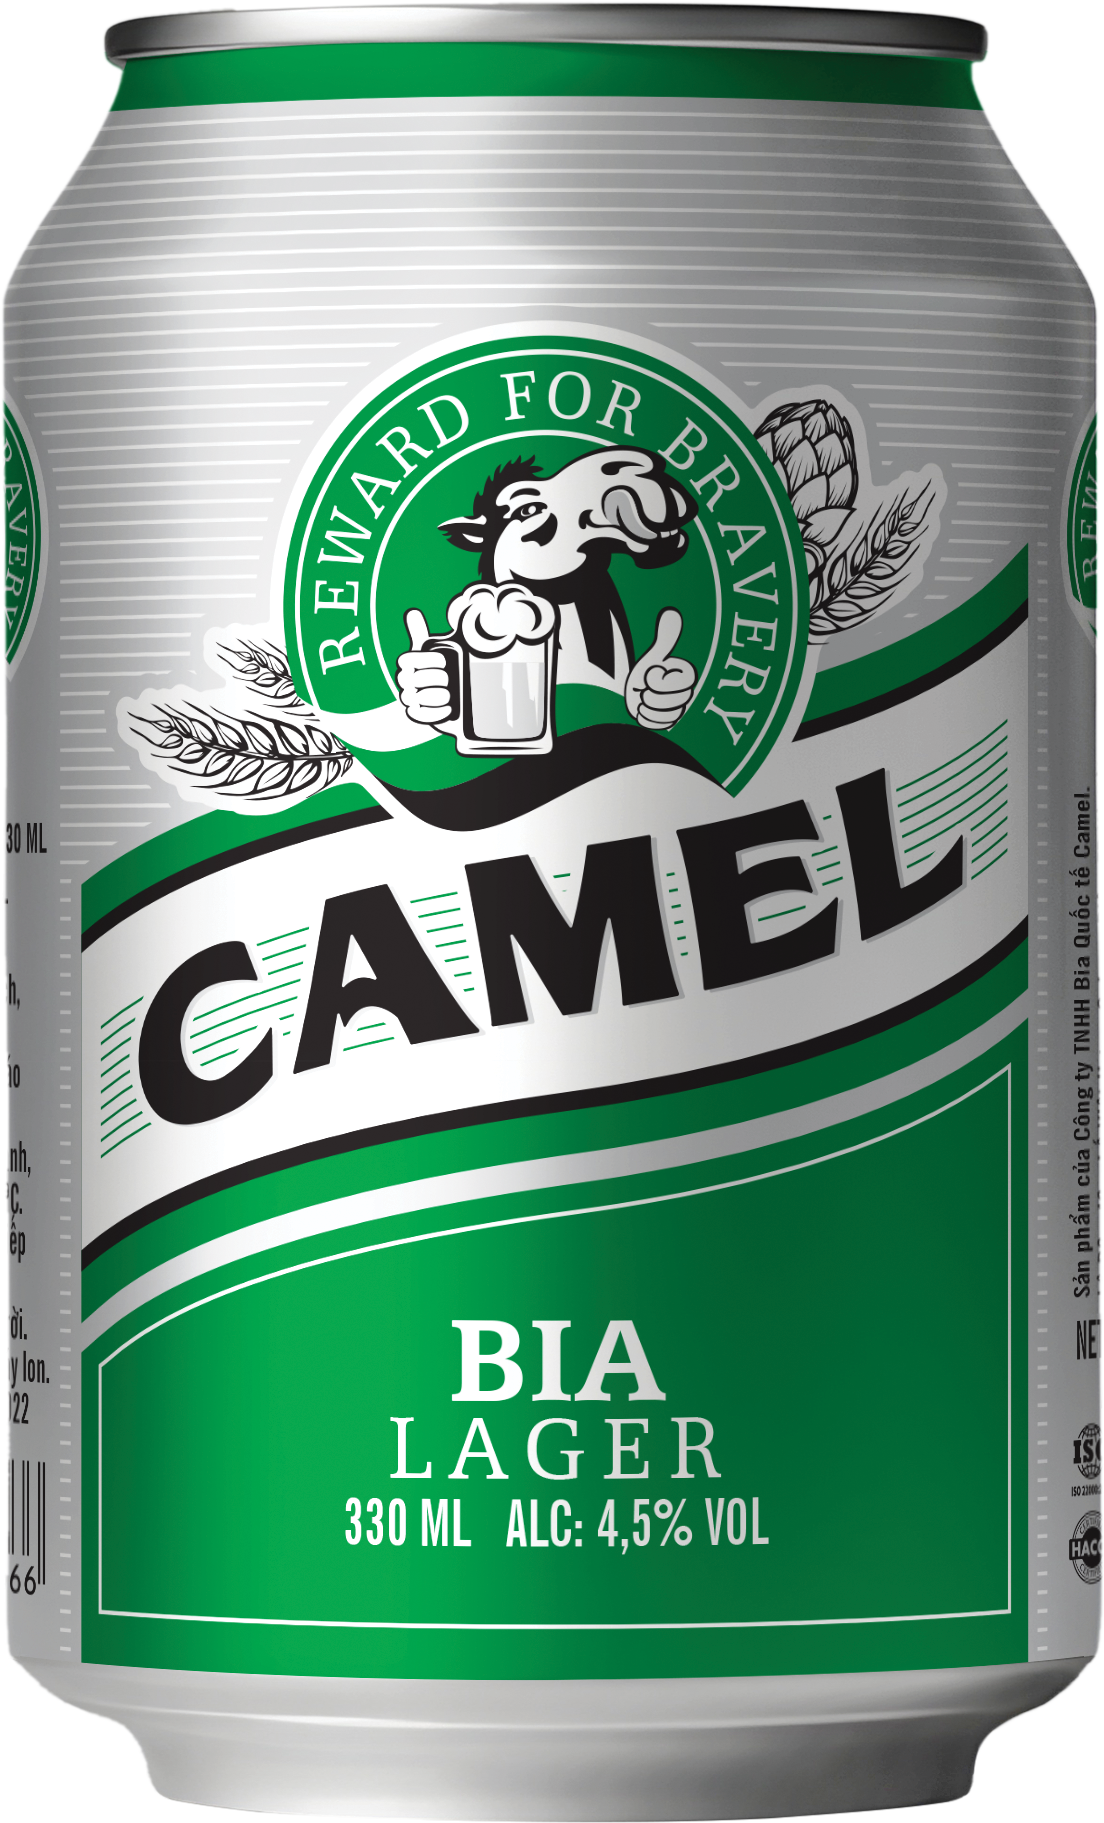 Camel Beer Mockup Green 330 ml Matt 02